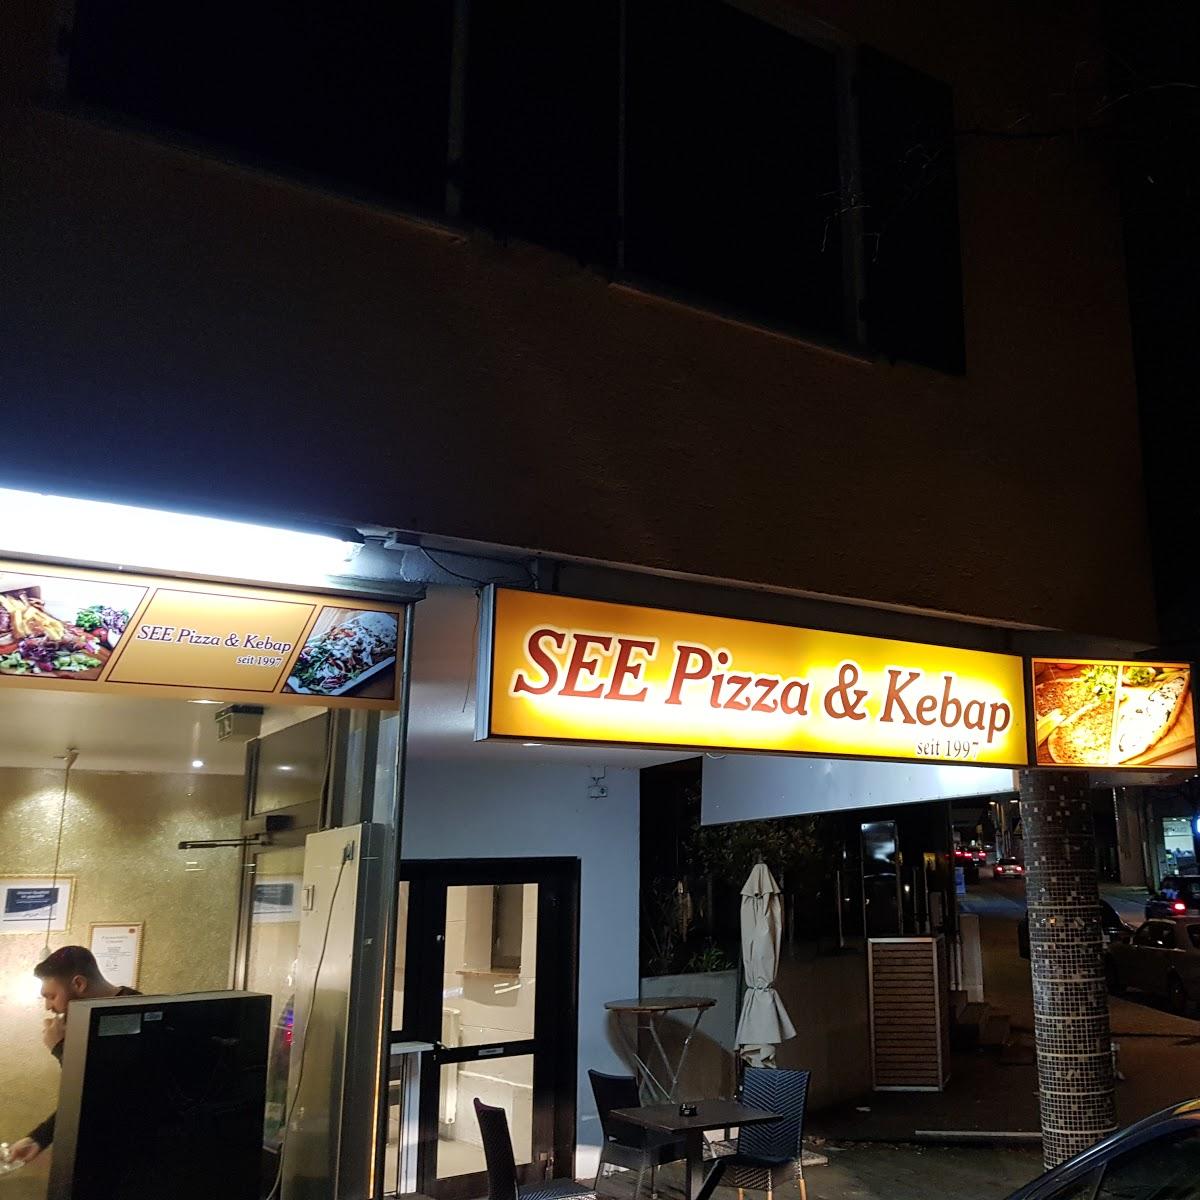 See Pizza & Kebap